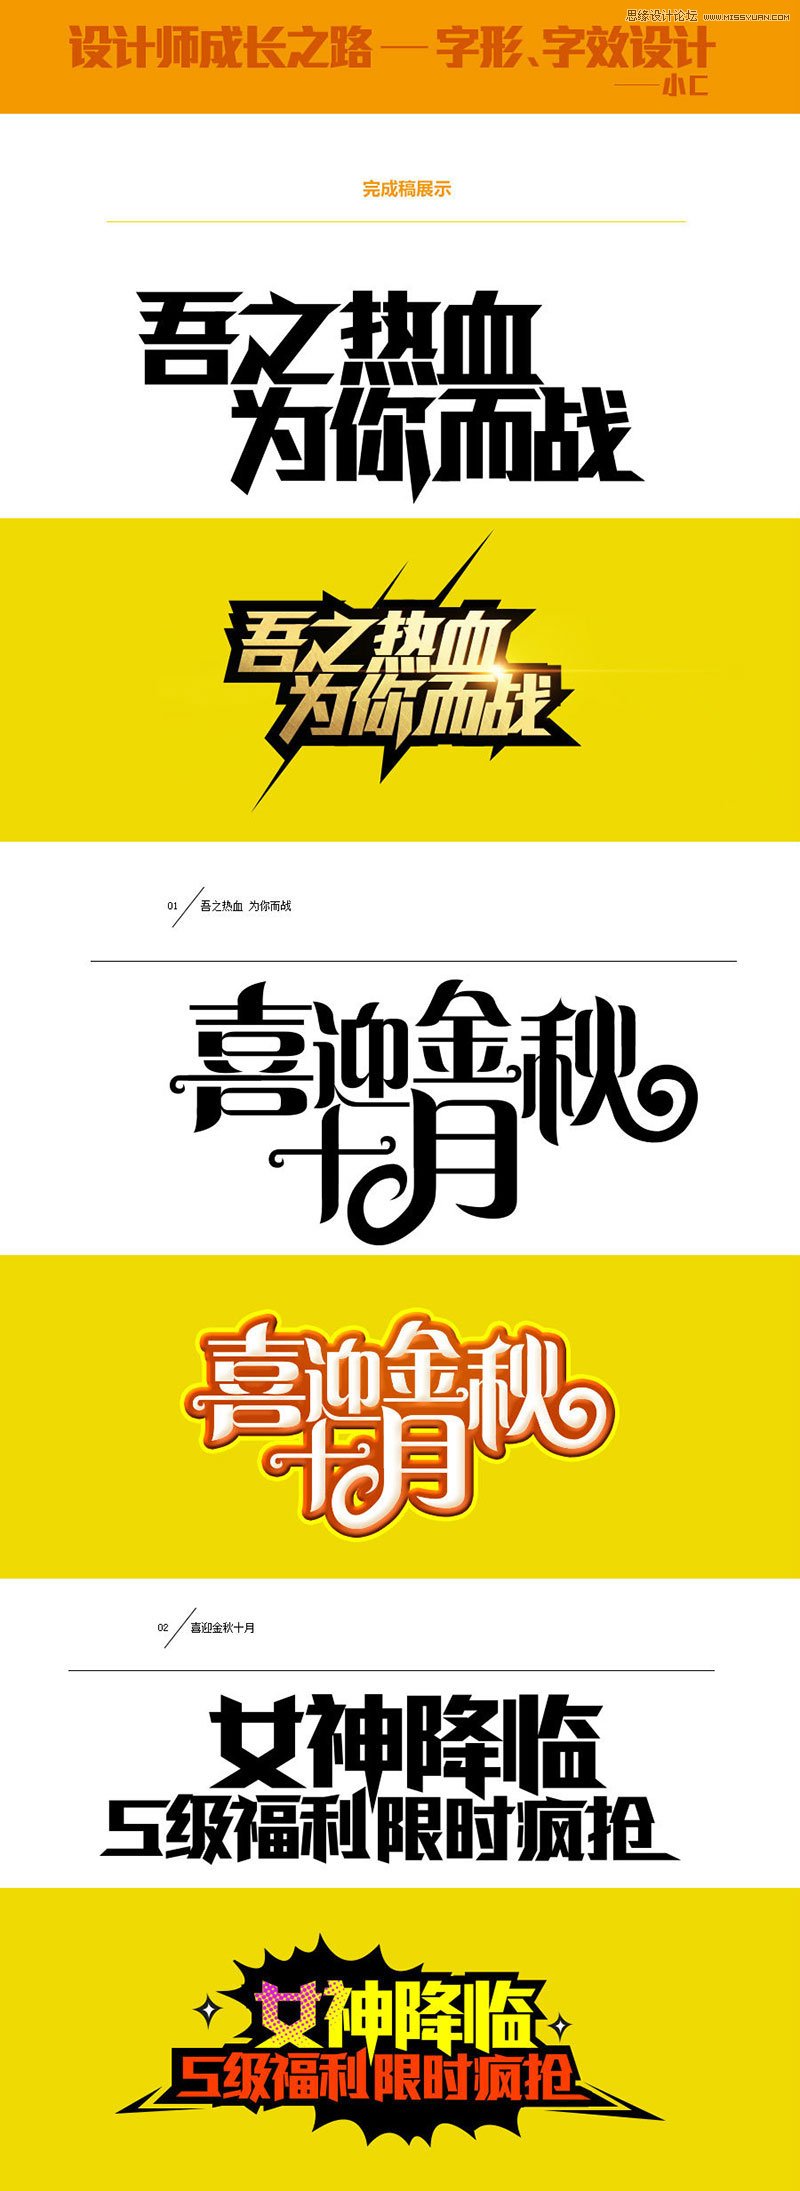 详细解析中文海报字体设计心得技巧,PS教程,图老师教程网